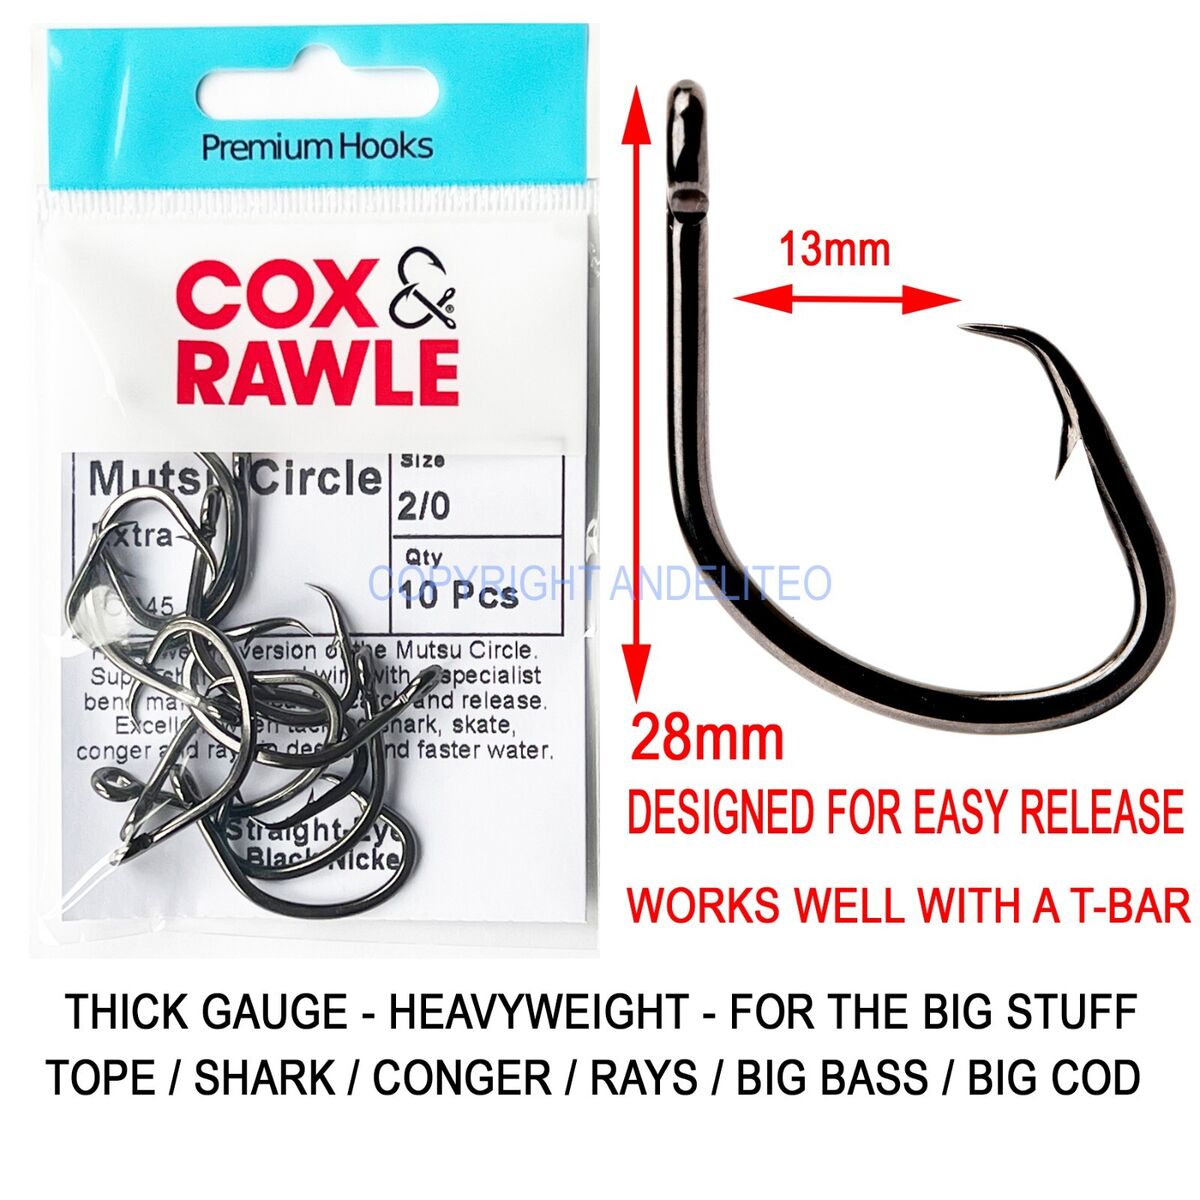 Cox & Rawle Mutsu Circle Extra Hooks